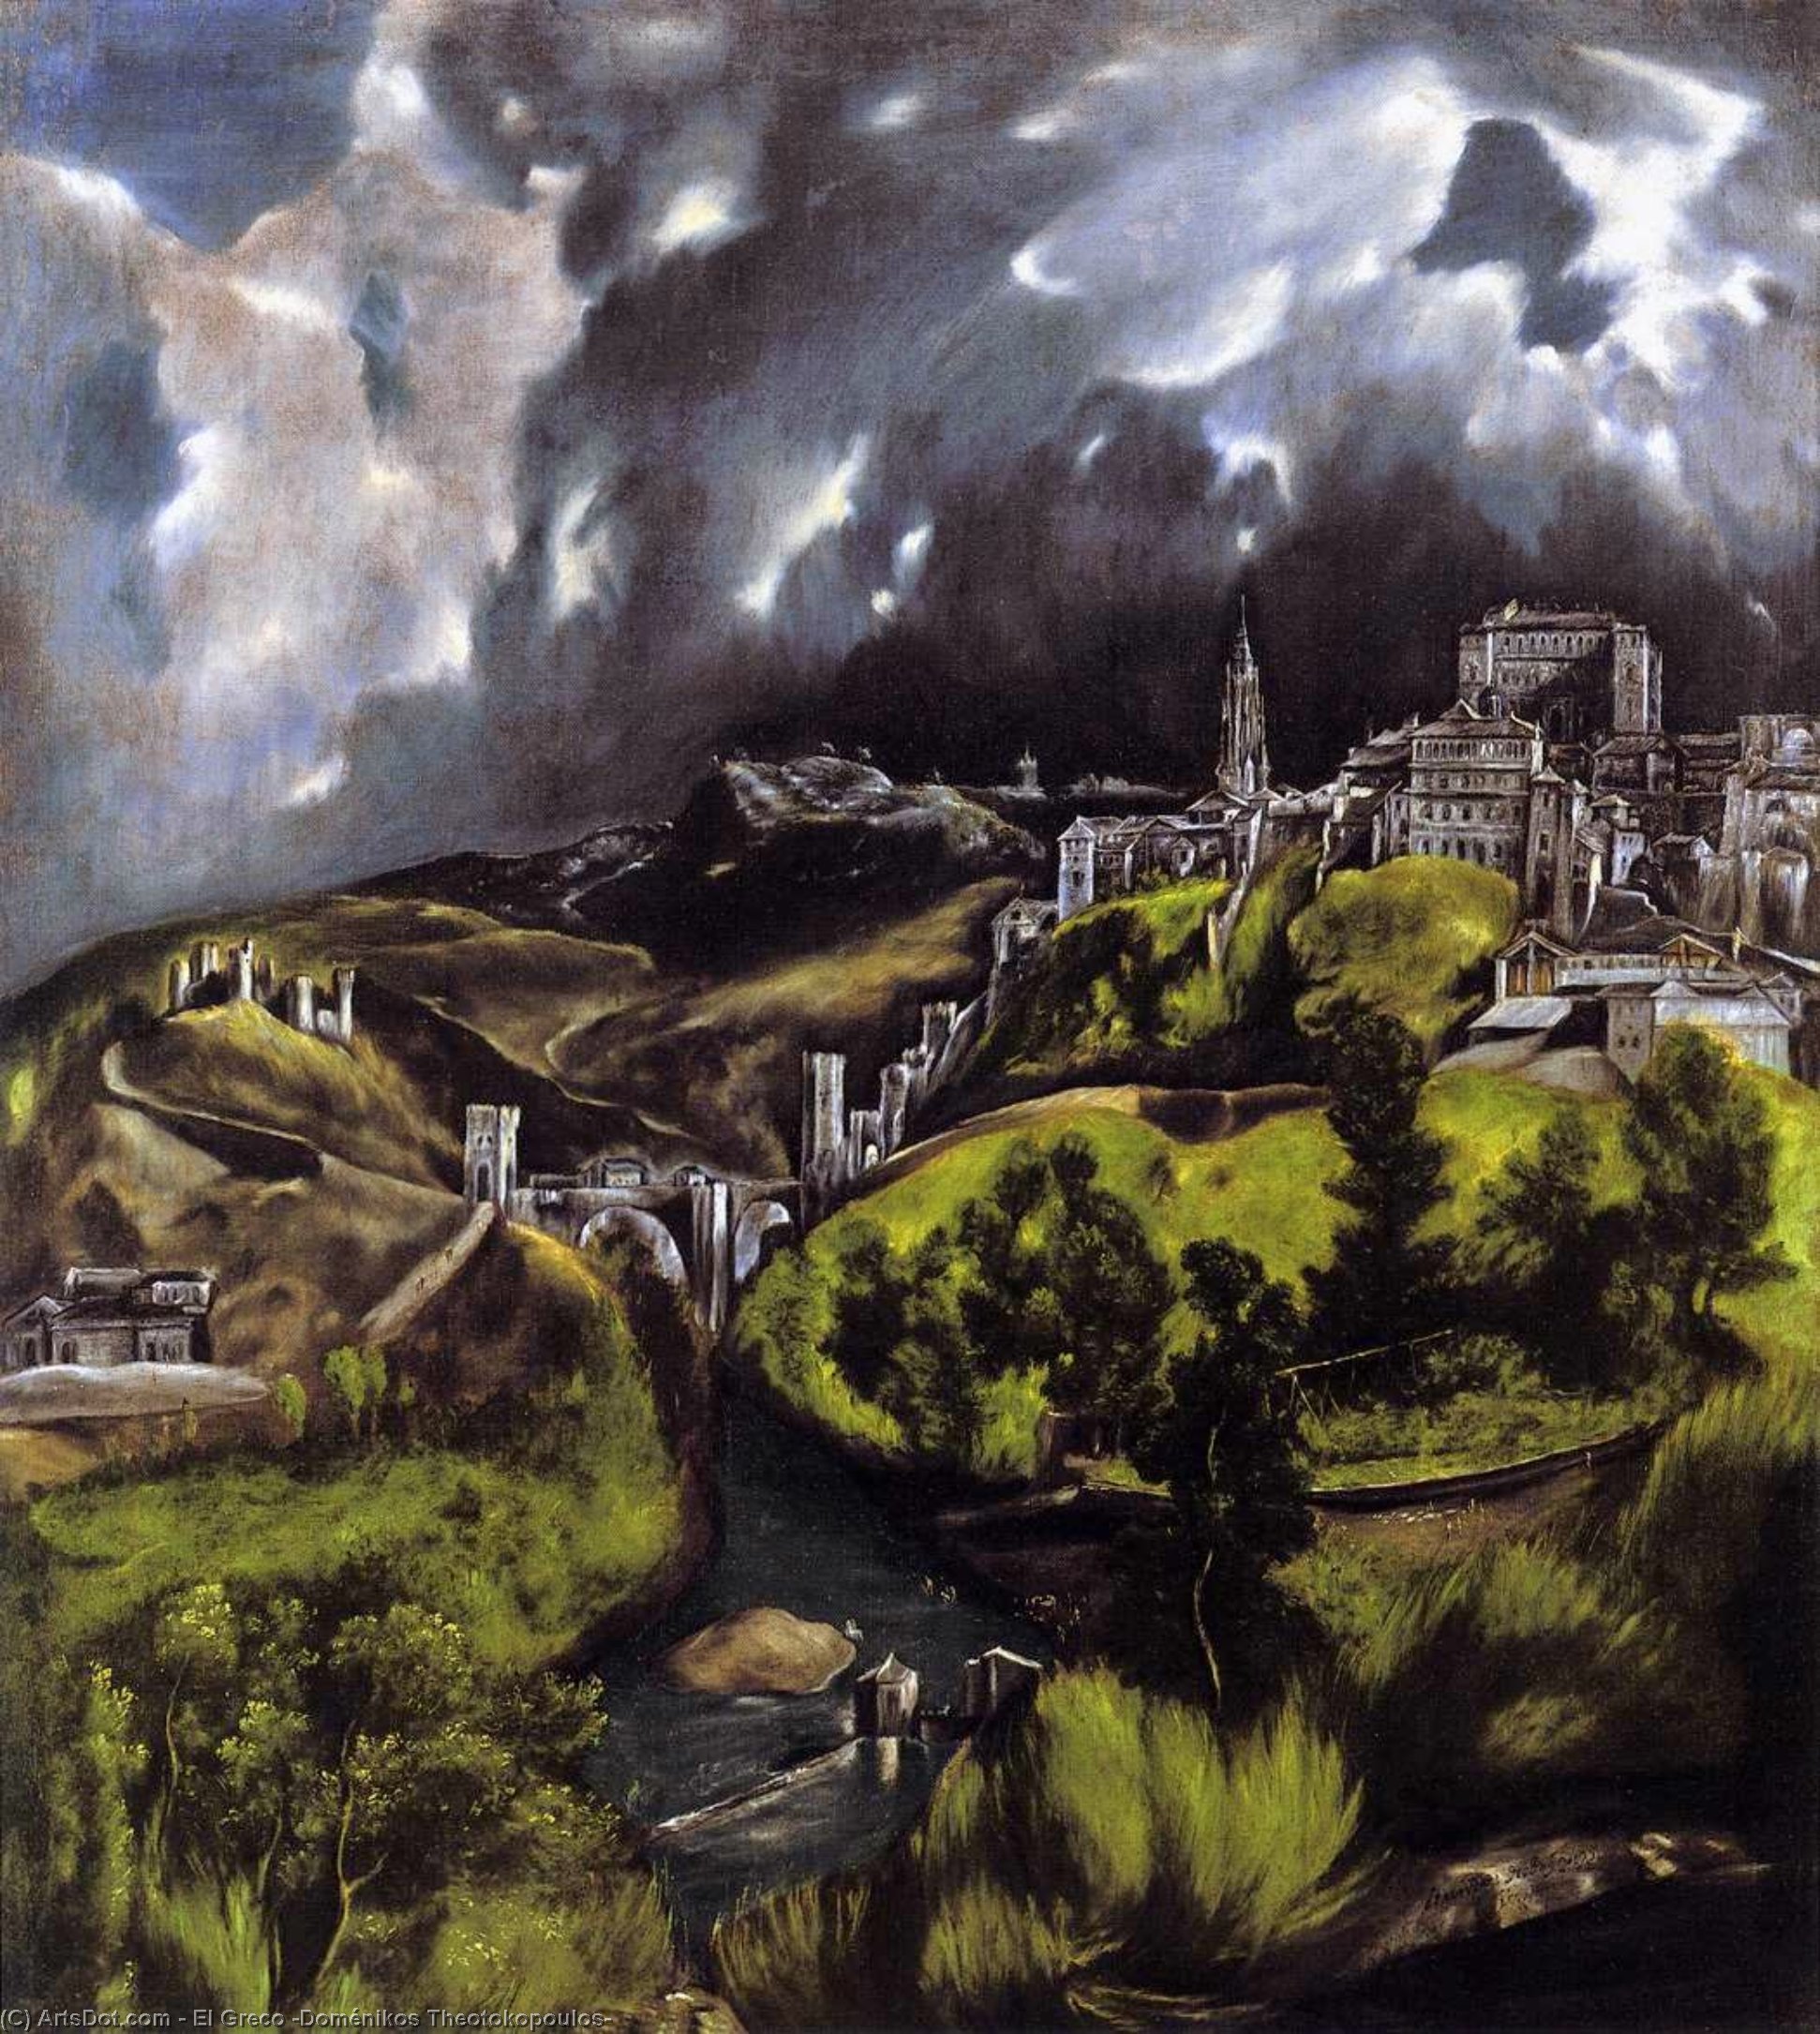 WikiOO.org - Encyclopedia of Fine Arts - Malba, Artwork El Greco (Doménikos Theotokopoulos) - A View of Toledo